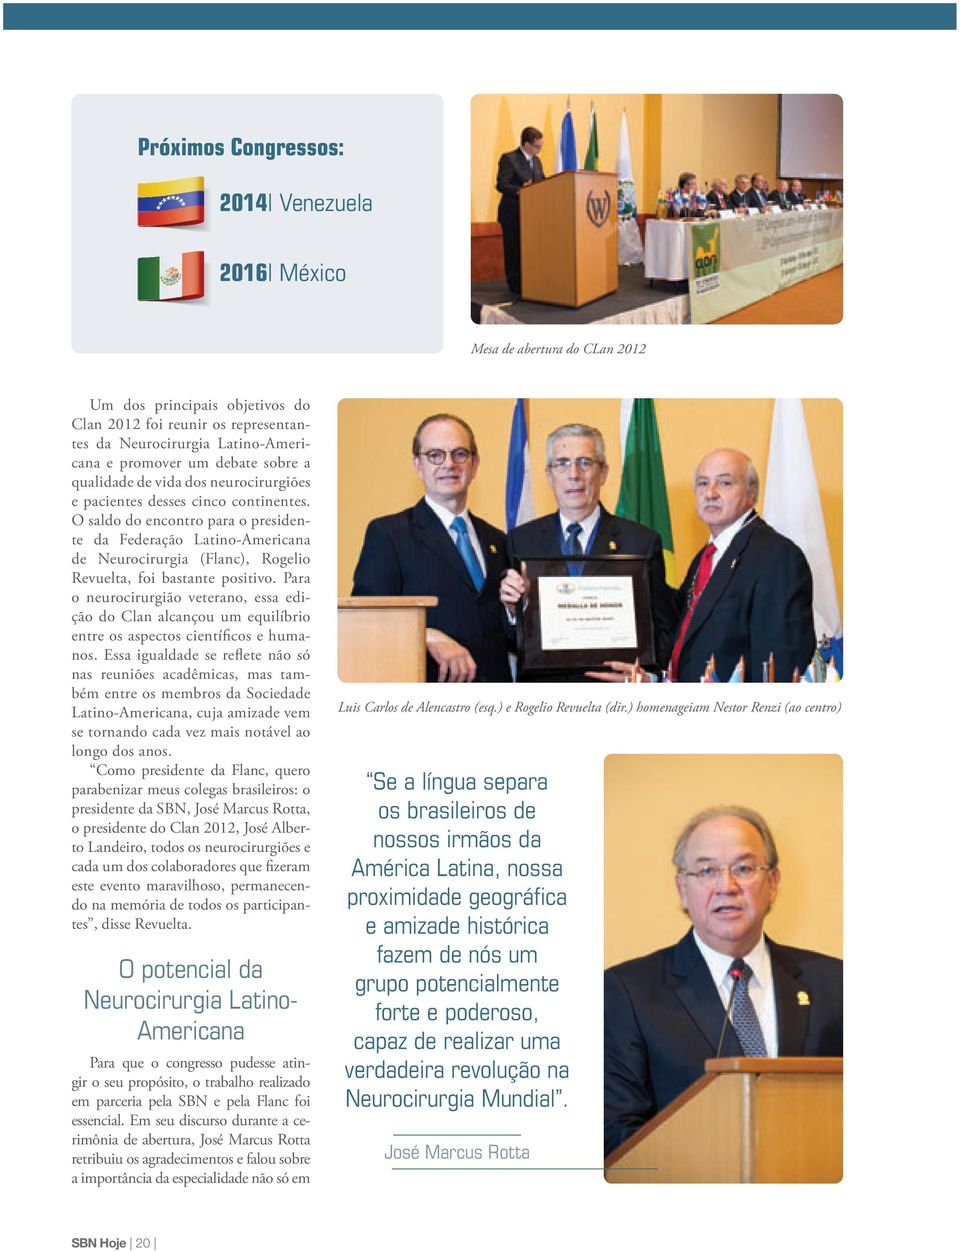 O saldo do encontro para o presidente da Federação Latino-Americana de Neurocirurgia (Flanc), Rogelio Revuelta, foi bastante positivo.